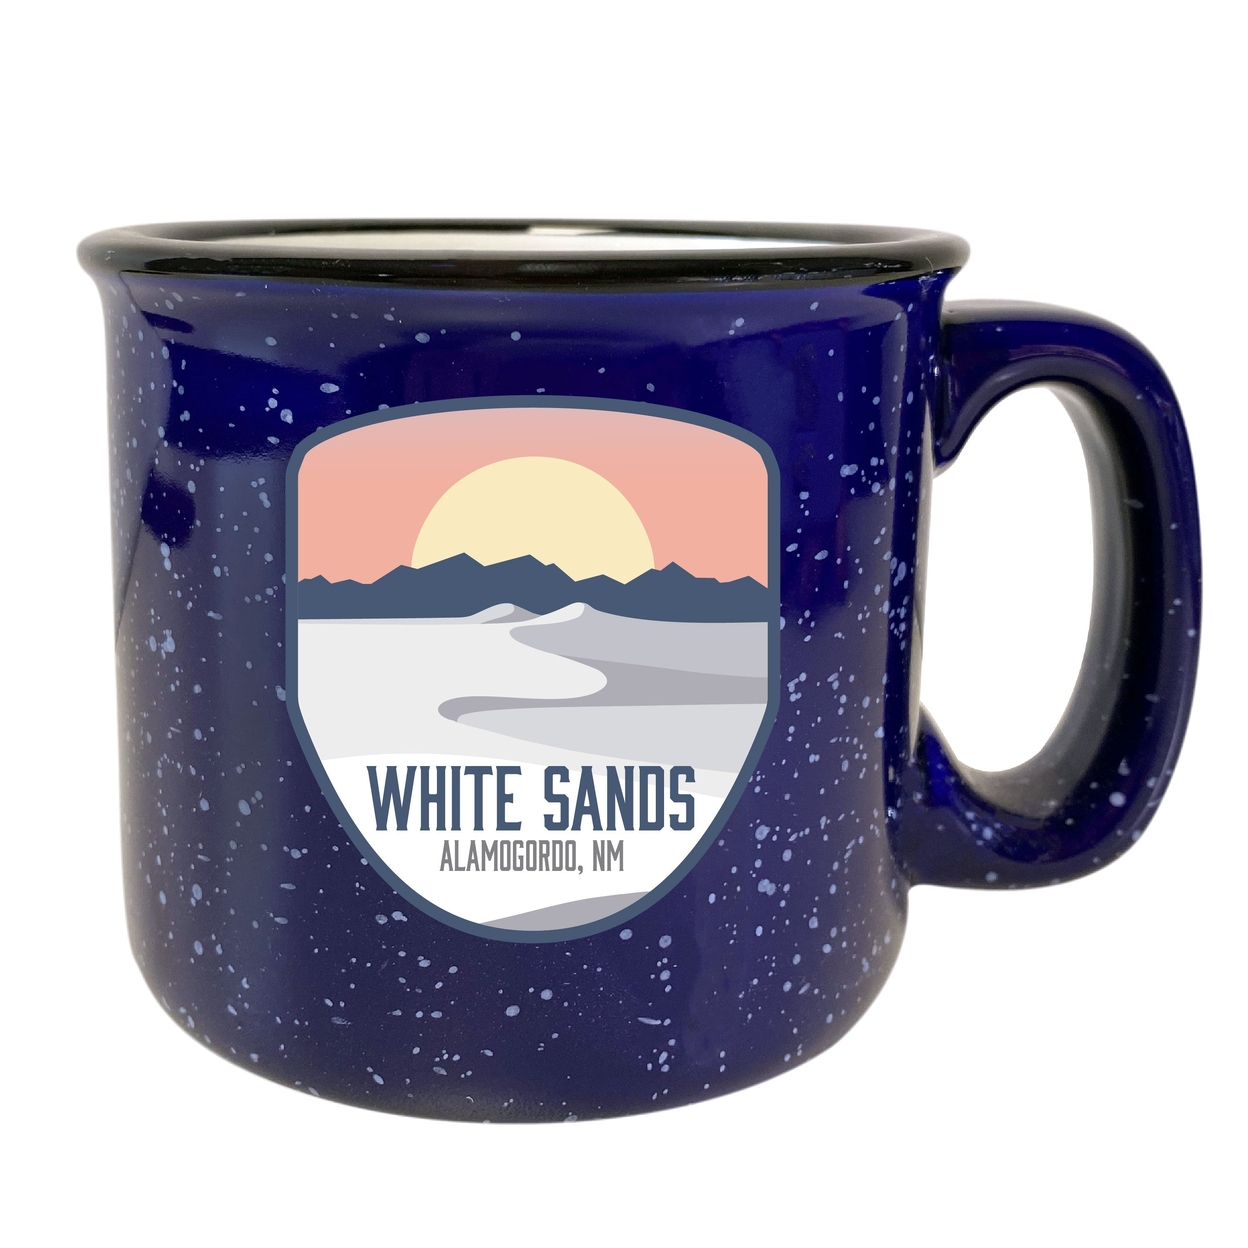 White Sands Alamogordo New Mexico 16 Oz Navy Speckled Ceramic Camper Coffee Mug Choice Of Design - Design D